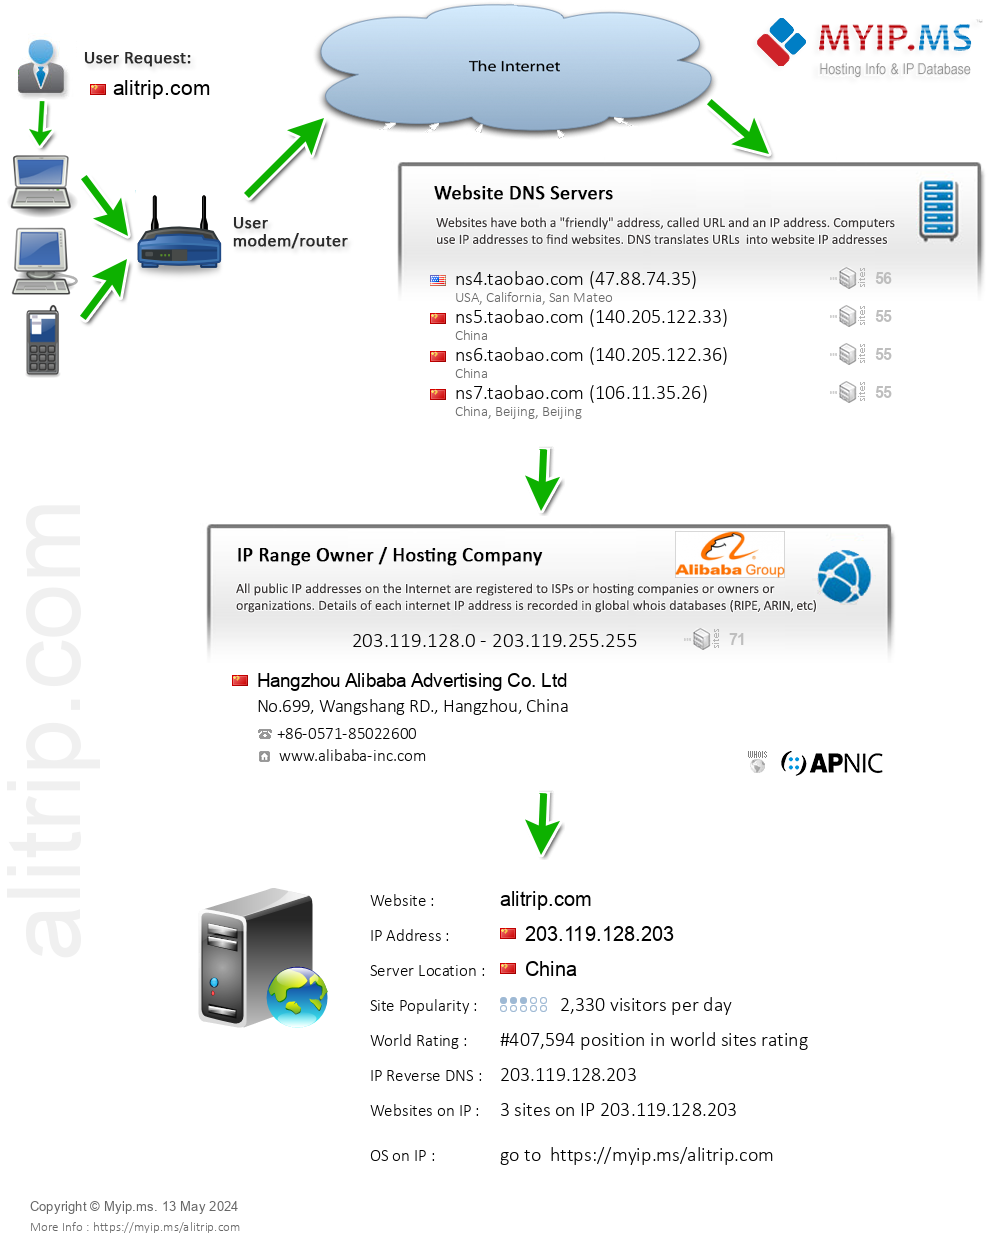 Alitrip.com - Website Hosting Visual IP Diagram